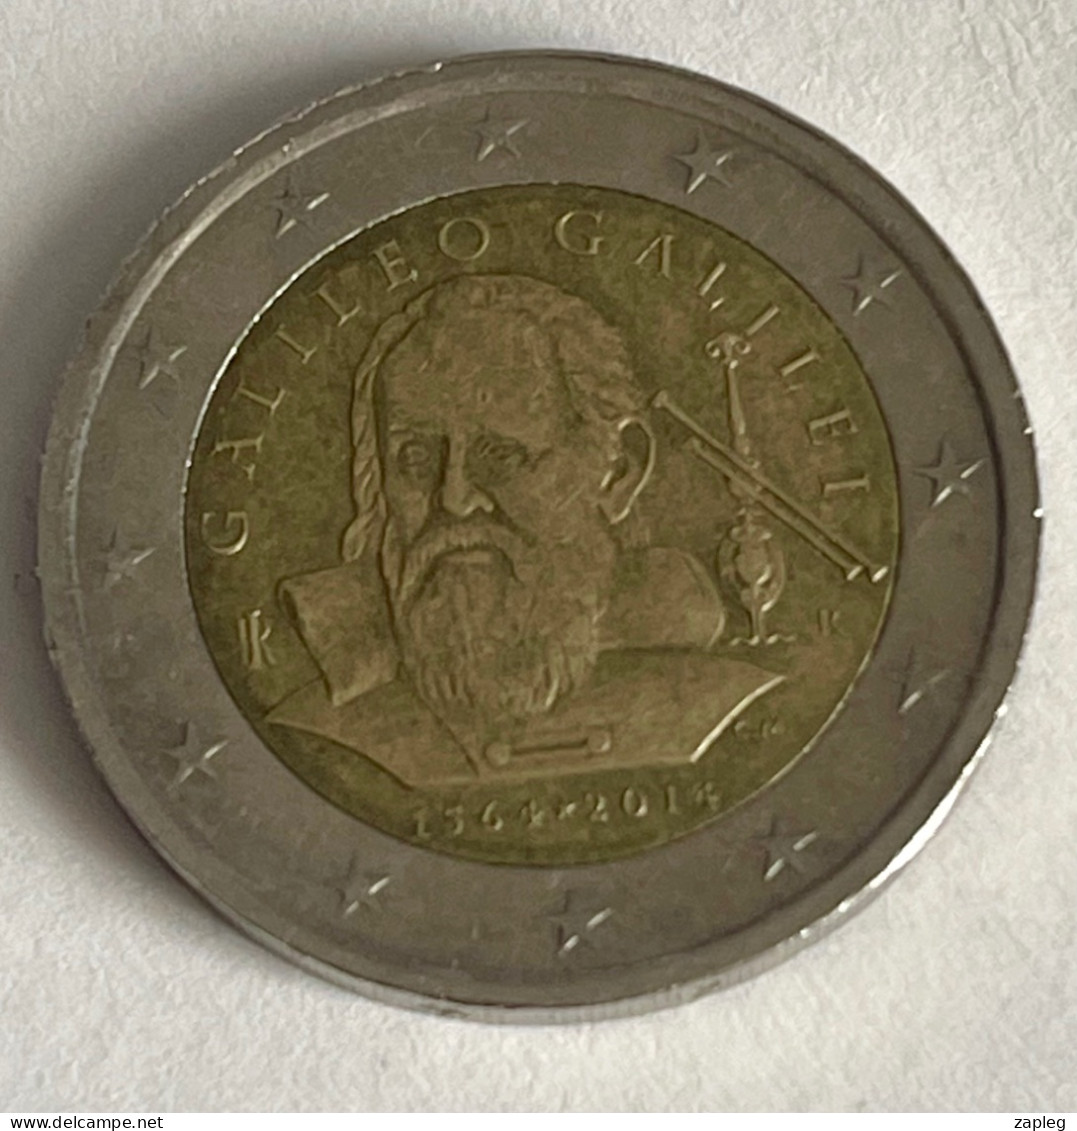 2 Euros 2014 450eme Anniversaire De La Naissance De Galileo Galilei - Italia